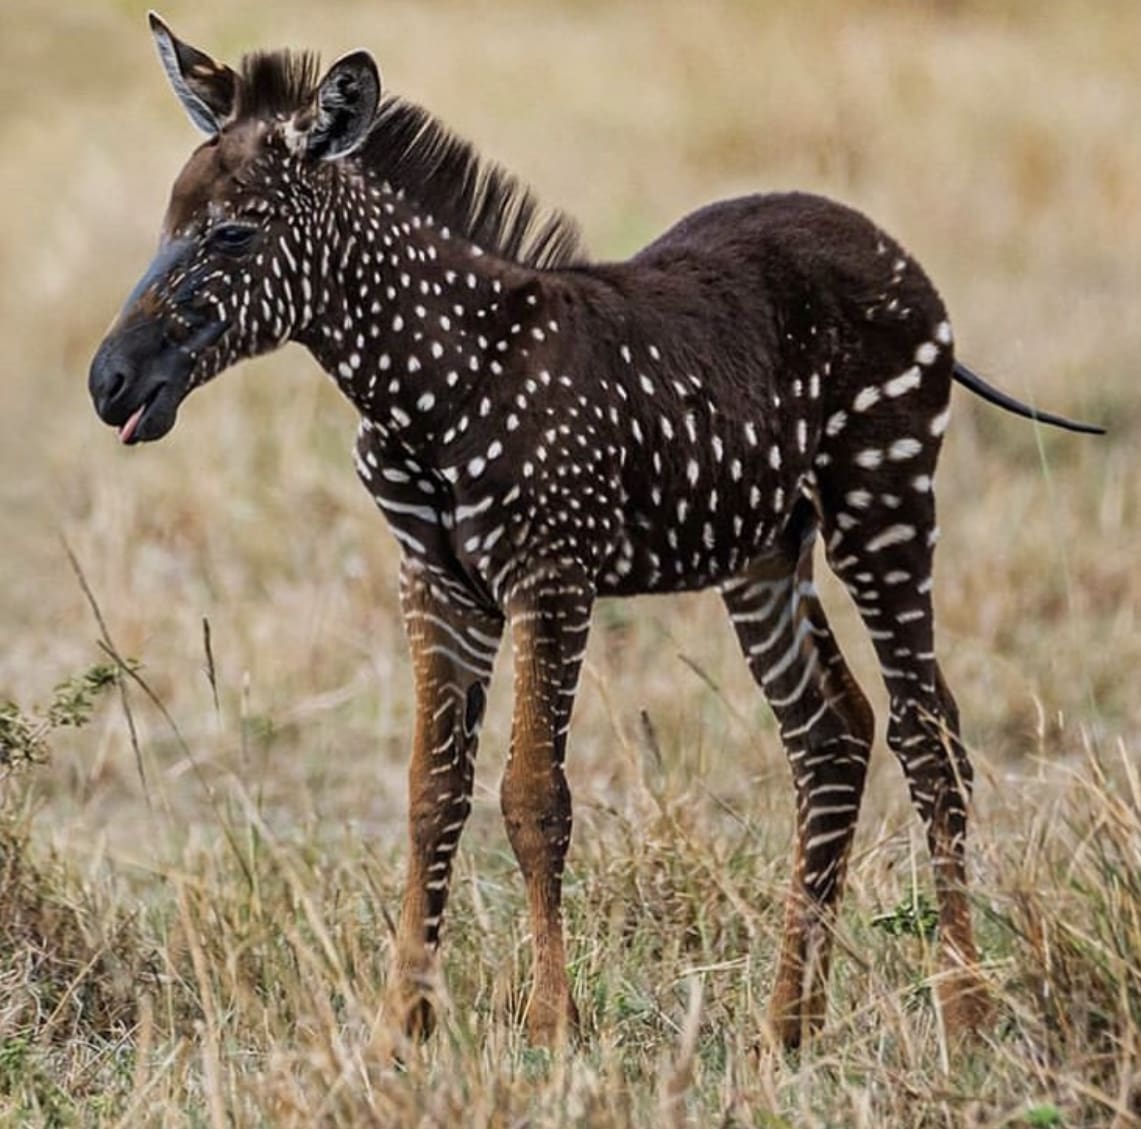 Spotted zebra foal in Kenya